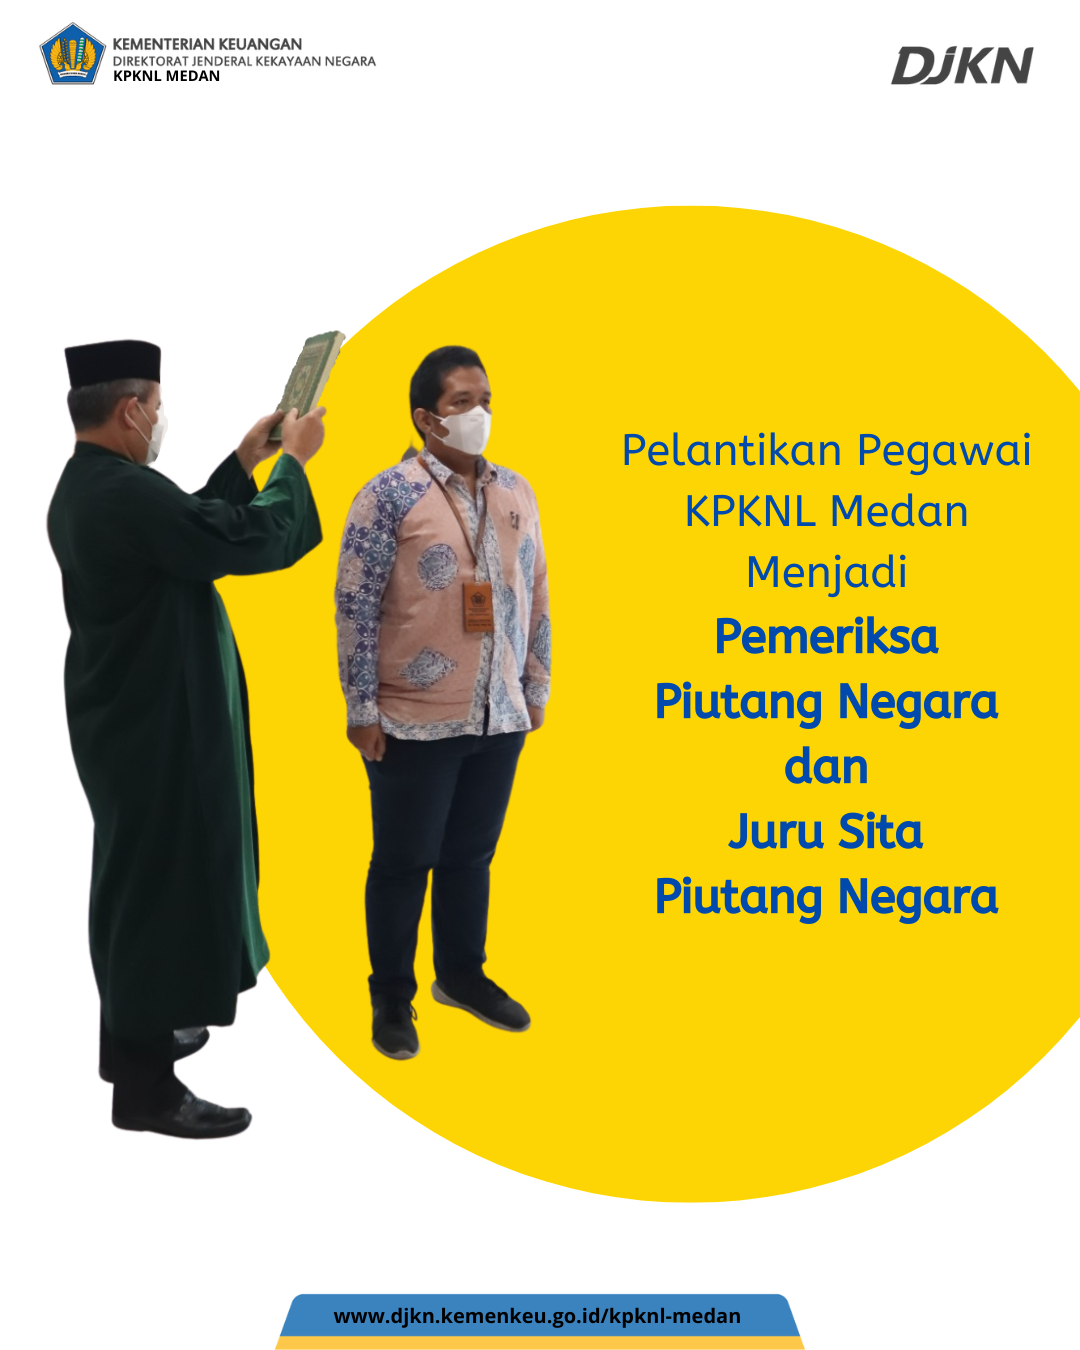 Pelantikan Pegawai KPKNL Medan Menjadi Pemeriksa Piutang Negara dan Juru Sita Piutang Negara